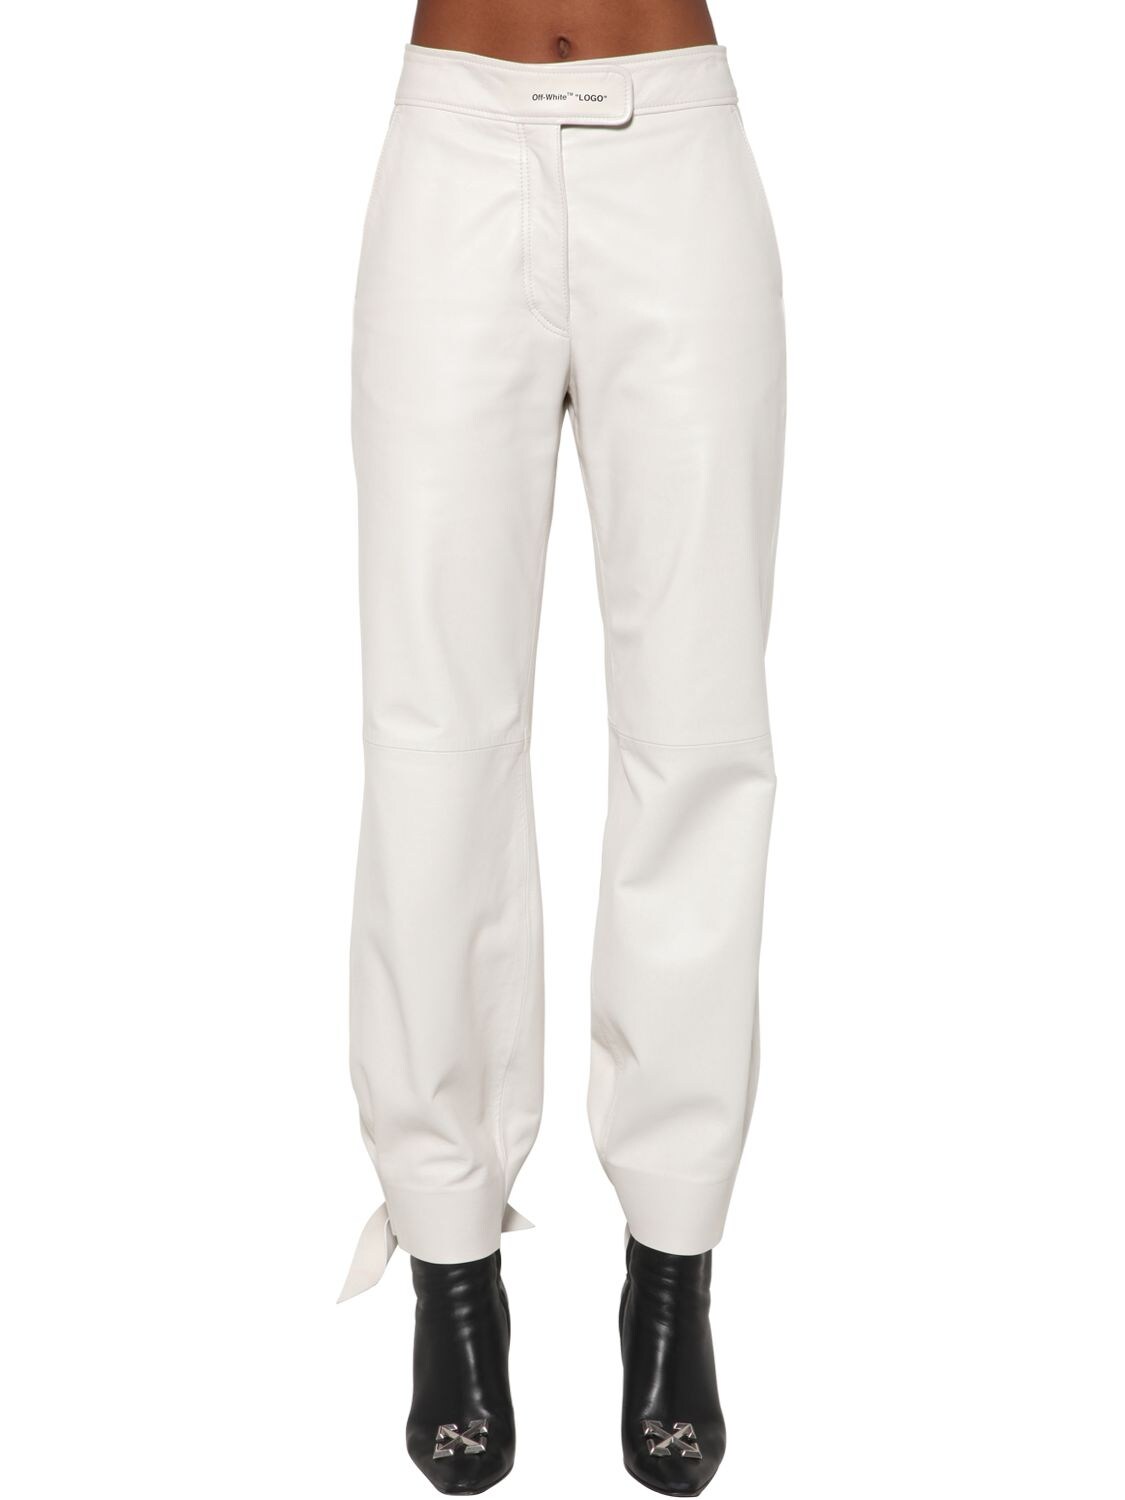 OFF-WHITE 宽松皮裤,70I4T8045-NDGWMA2